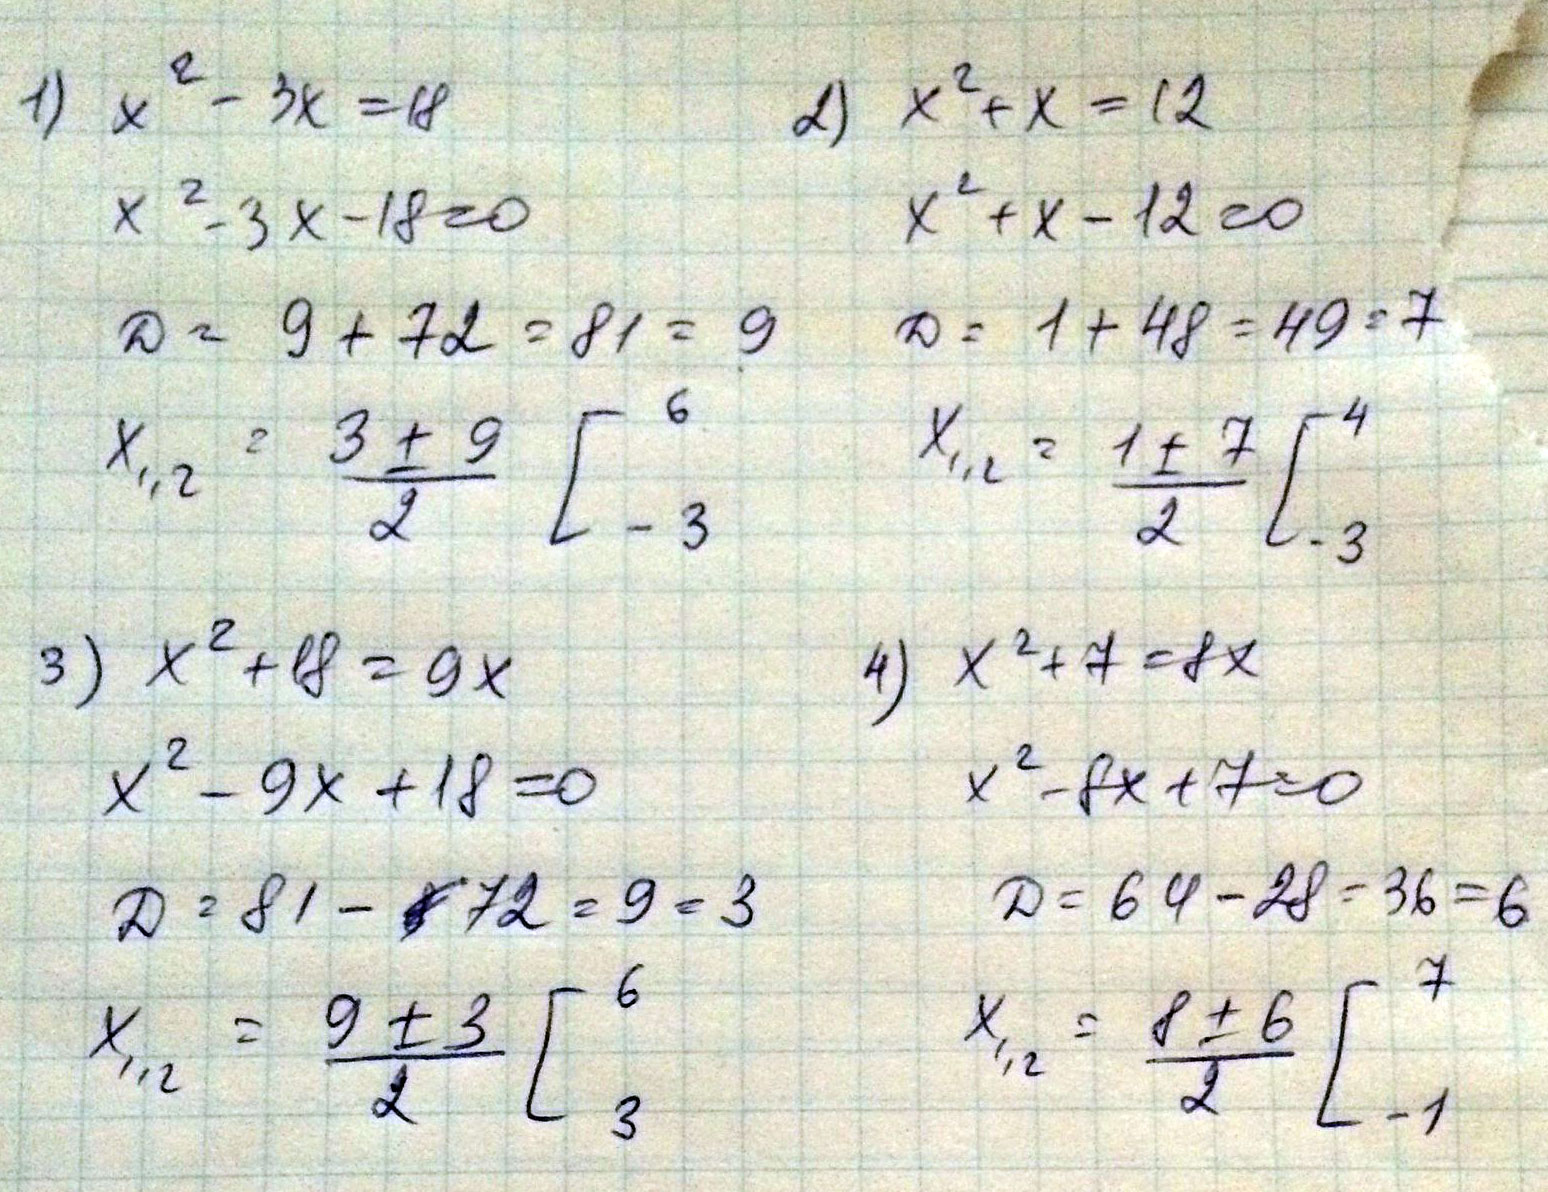 Дискриминант 9x 8 3x 0. 3x в квадрате - 6x. X2+x-2 дискриминант. 7x в квадрате-6x-1=0. Решение 3x в квадрате-2x-3=0.